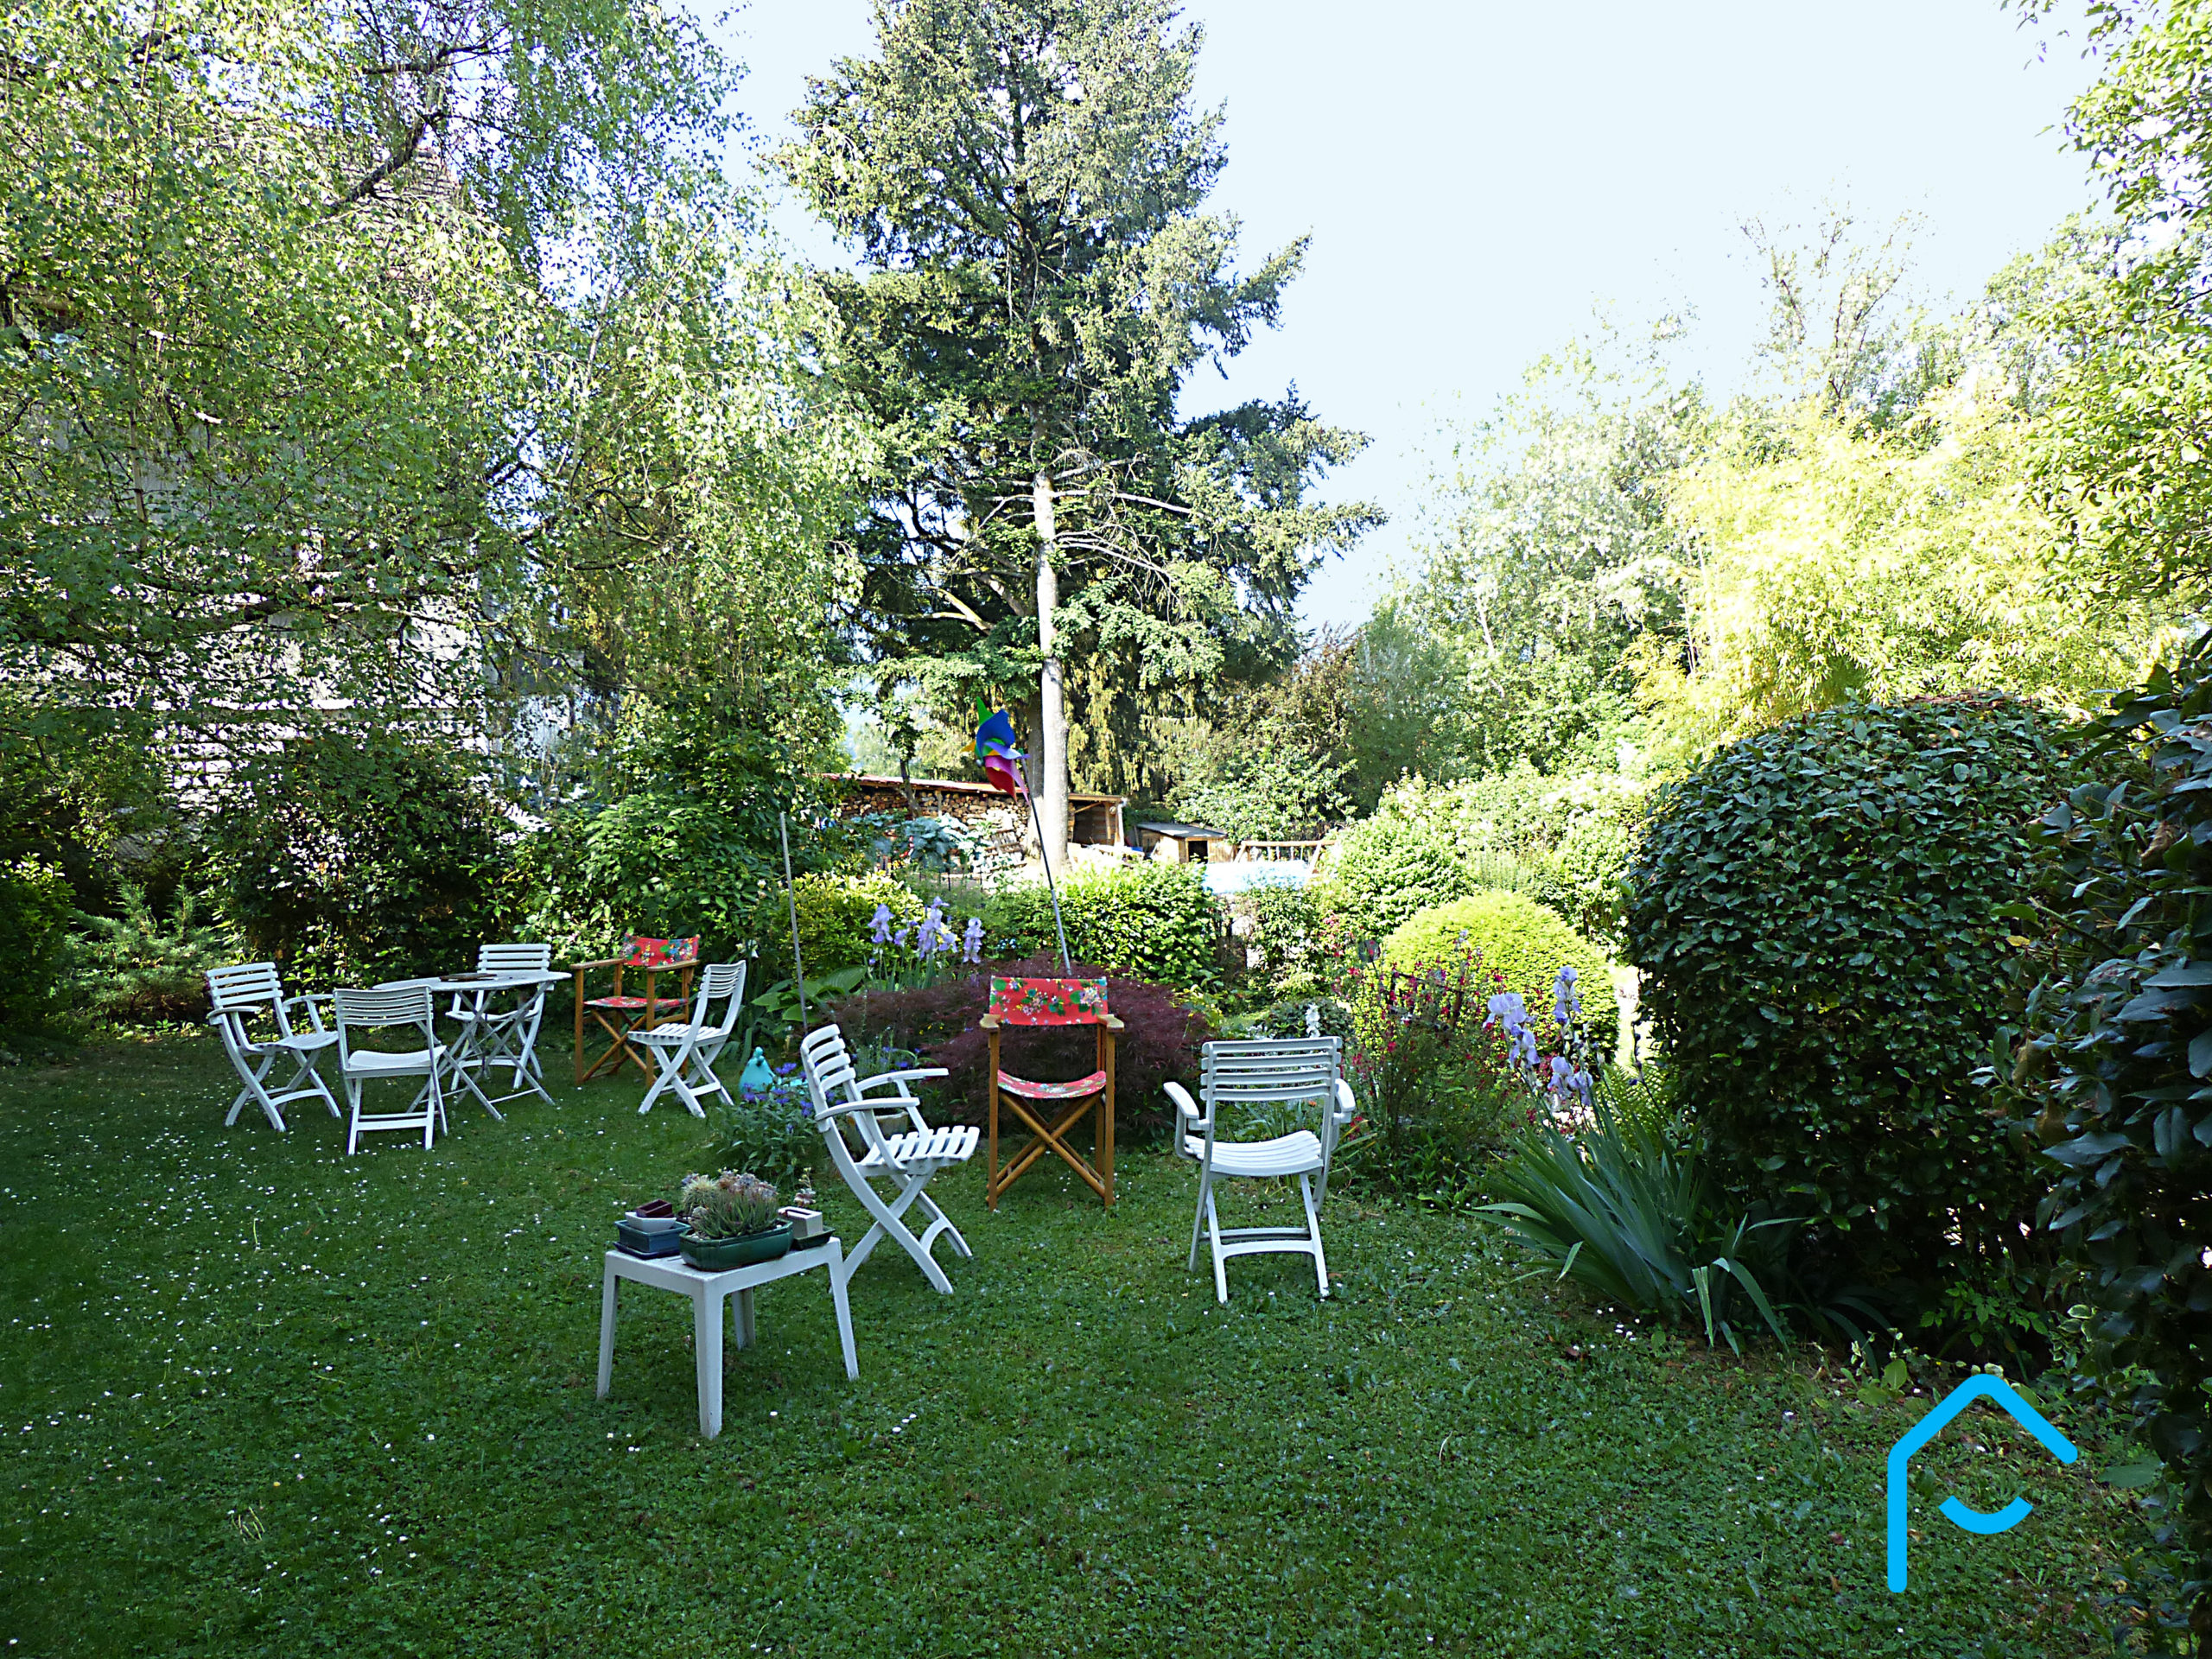 A vendre maison individuelle Jacob Bellecombette Savoie Chambéry terrain piscine jardin vue 8